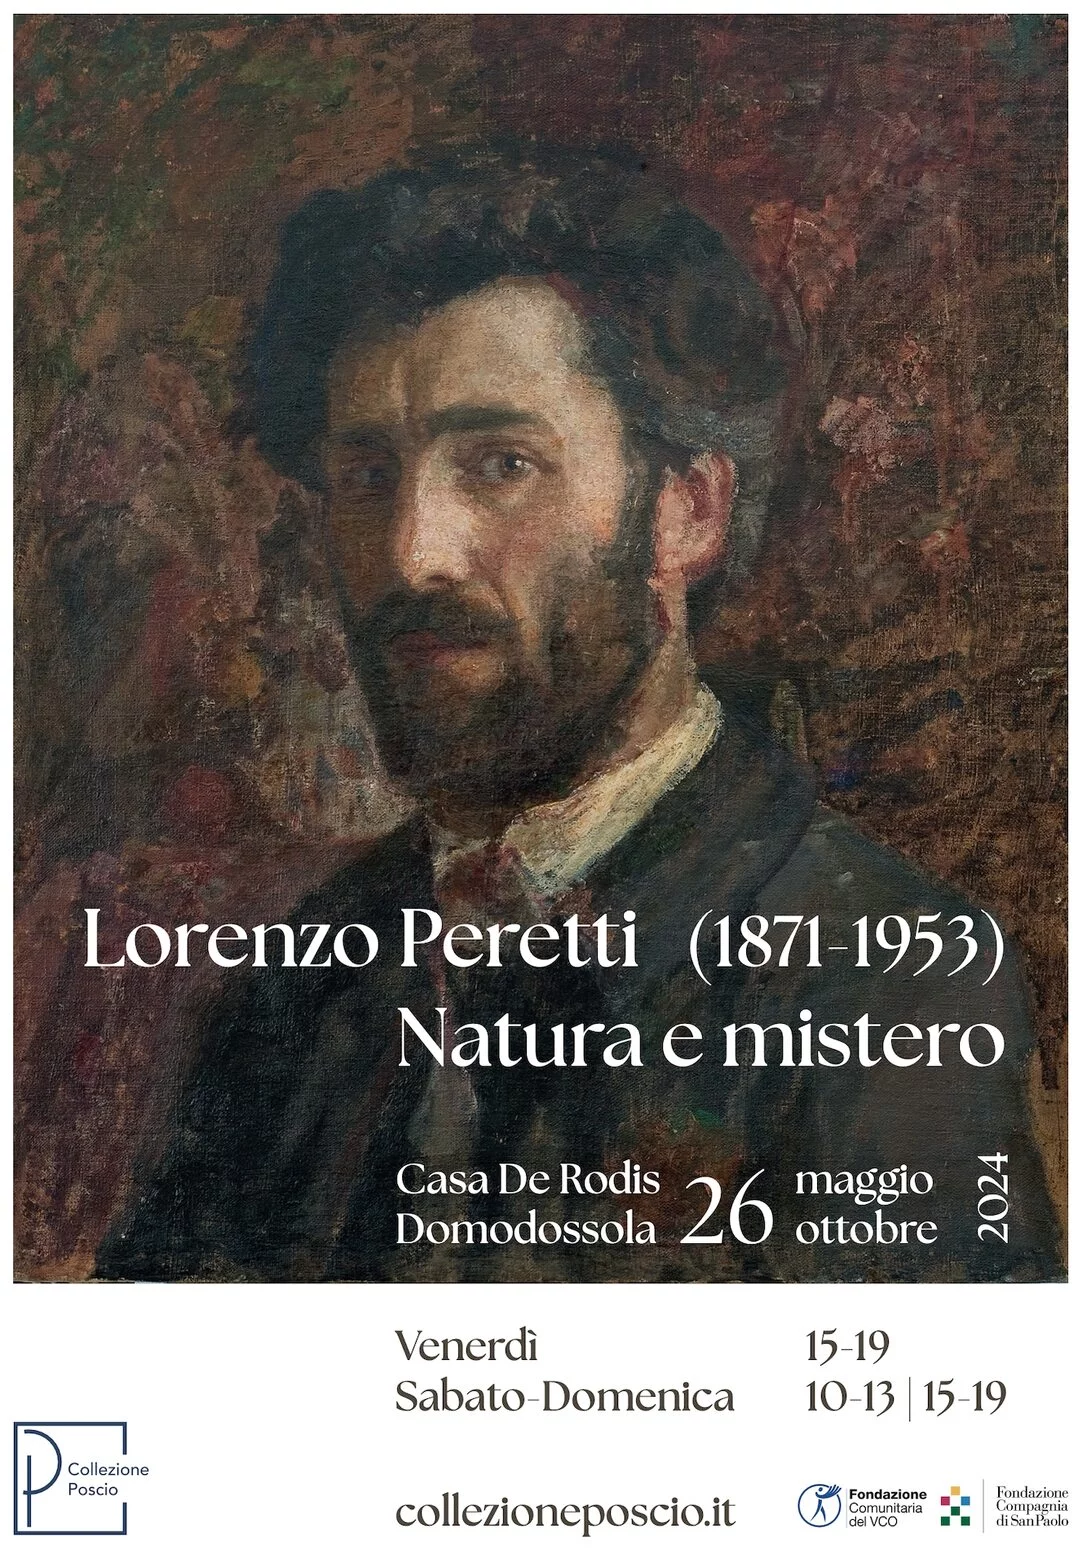 Lorenzo Peretti (1871 - 1953) Natura e mistero